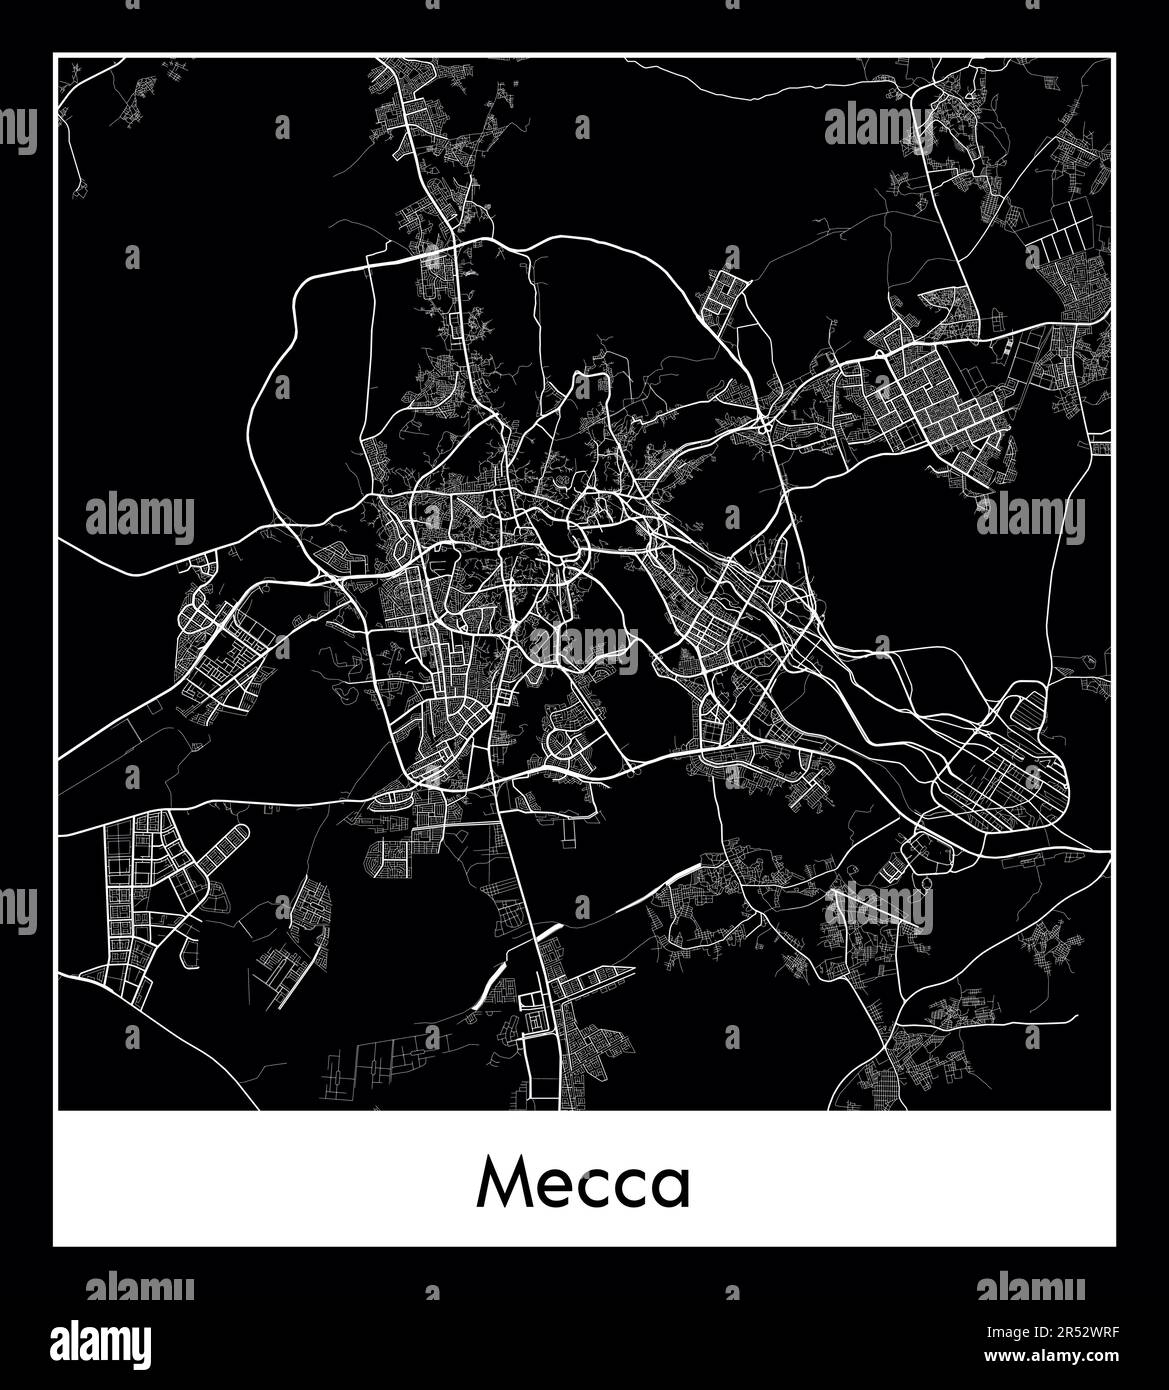 Carte minimale de la ville de la Mecque (Saudi Arabiacarte de la ville de la Mecque (Arabie Saoudite Asie) Asie) Illustration de Vecteur